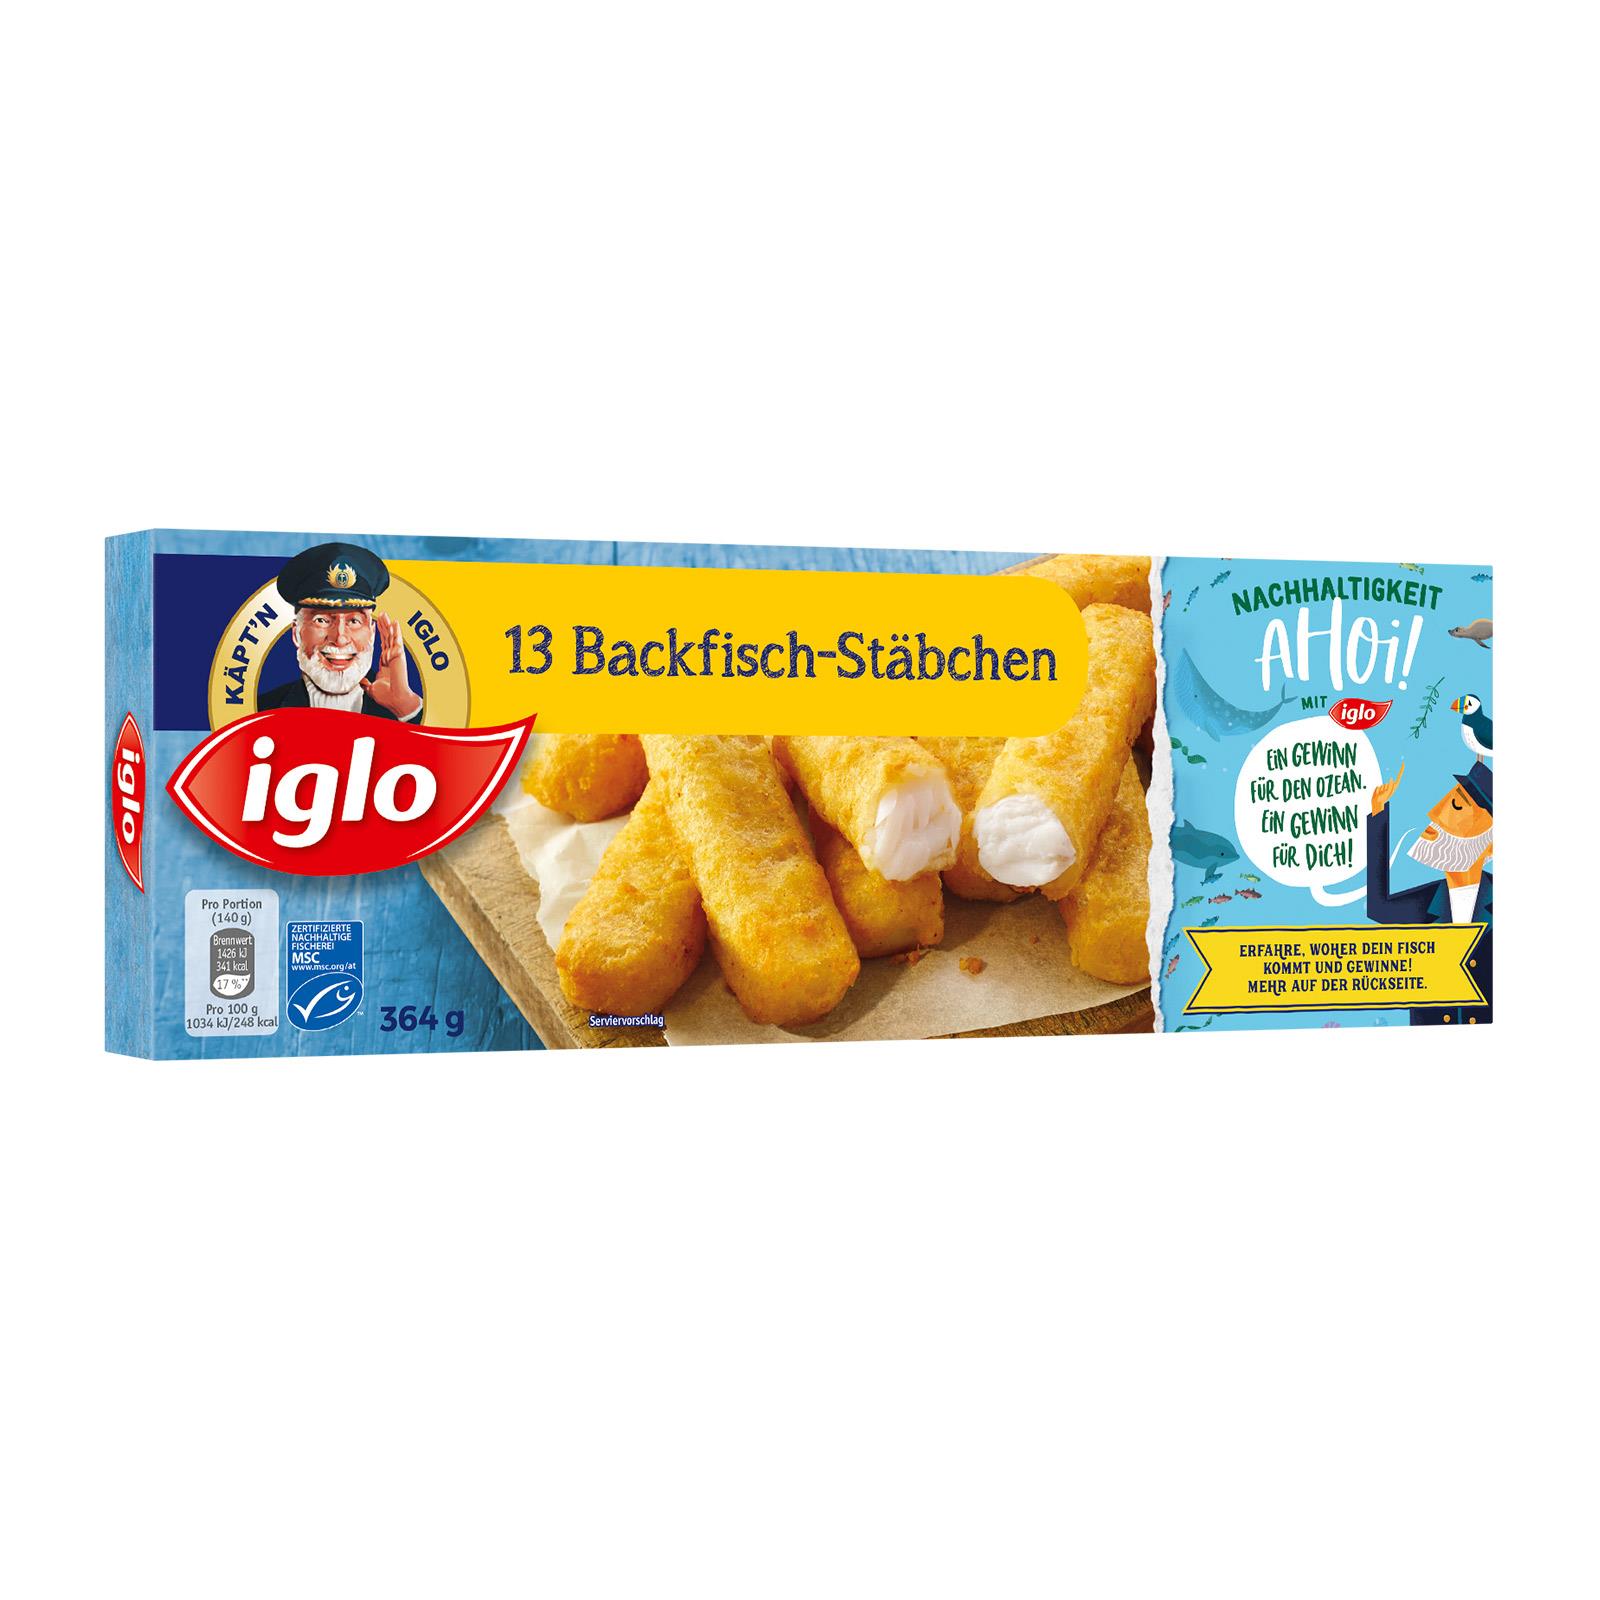 Iglo Backfisch-Stäbchen - Preisvergleich